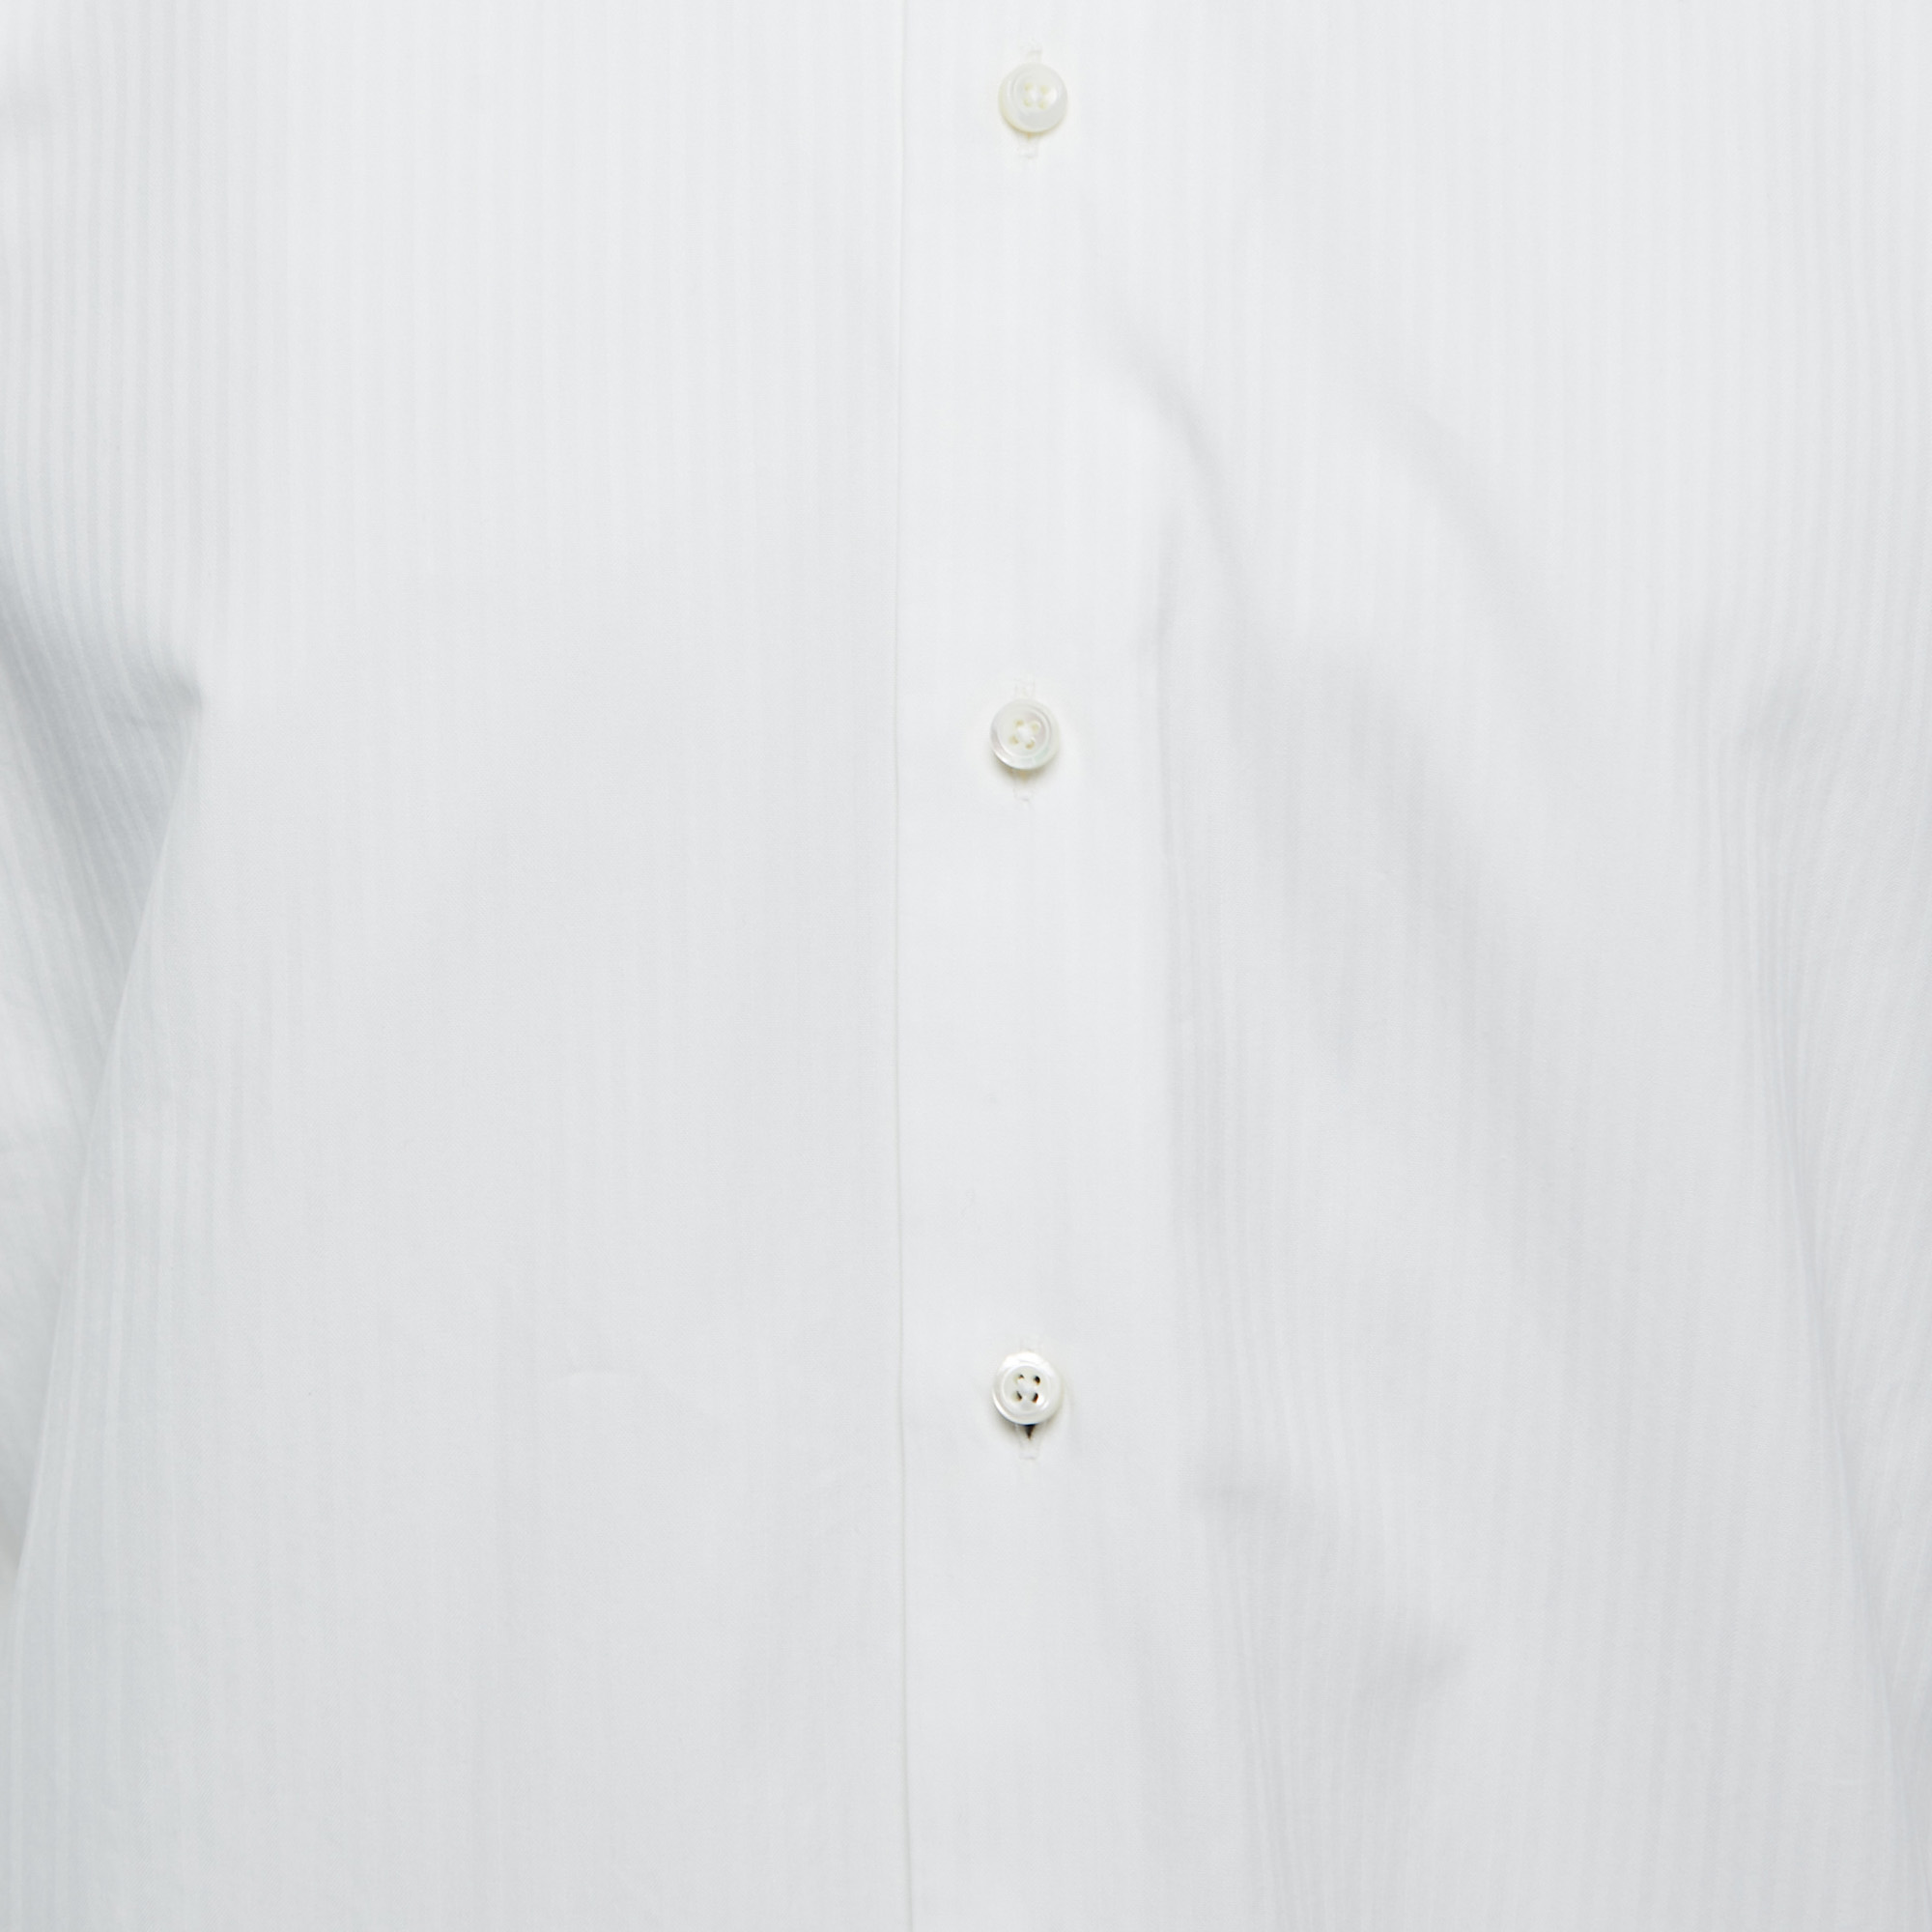 Ermenegildo Zegna White Patterned Cotton Full Sleeve Shirt M